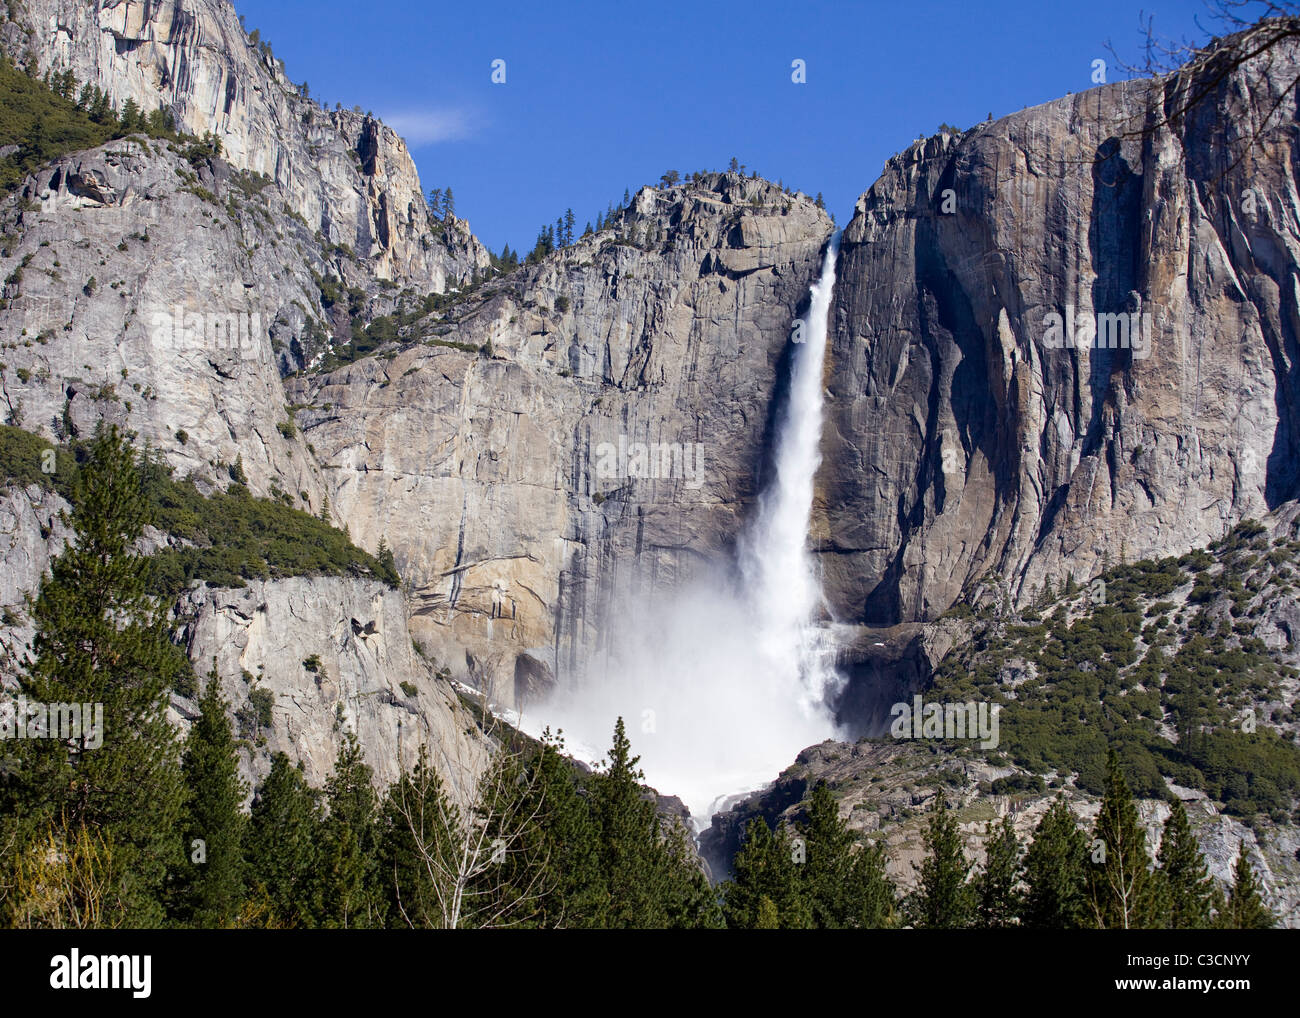 Cataratas de Yosemite bajo un cielo azul - Yosemite Valley, California, EE.UU. Foto de stock